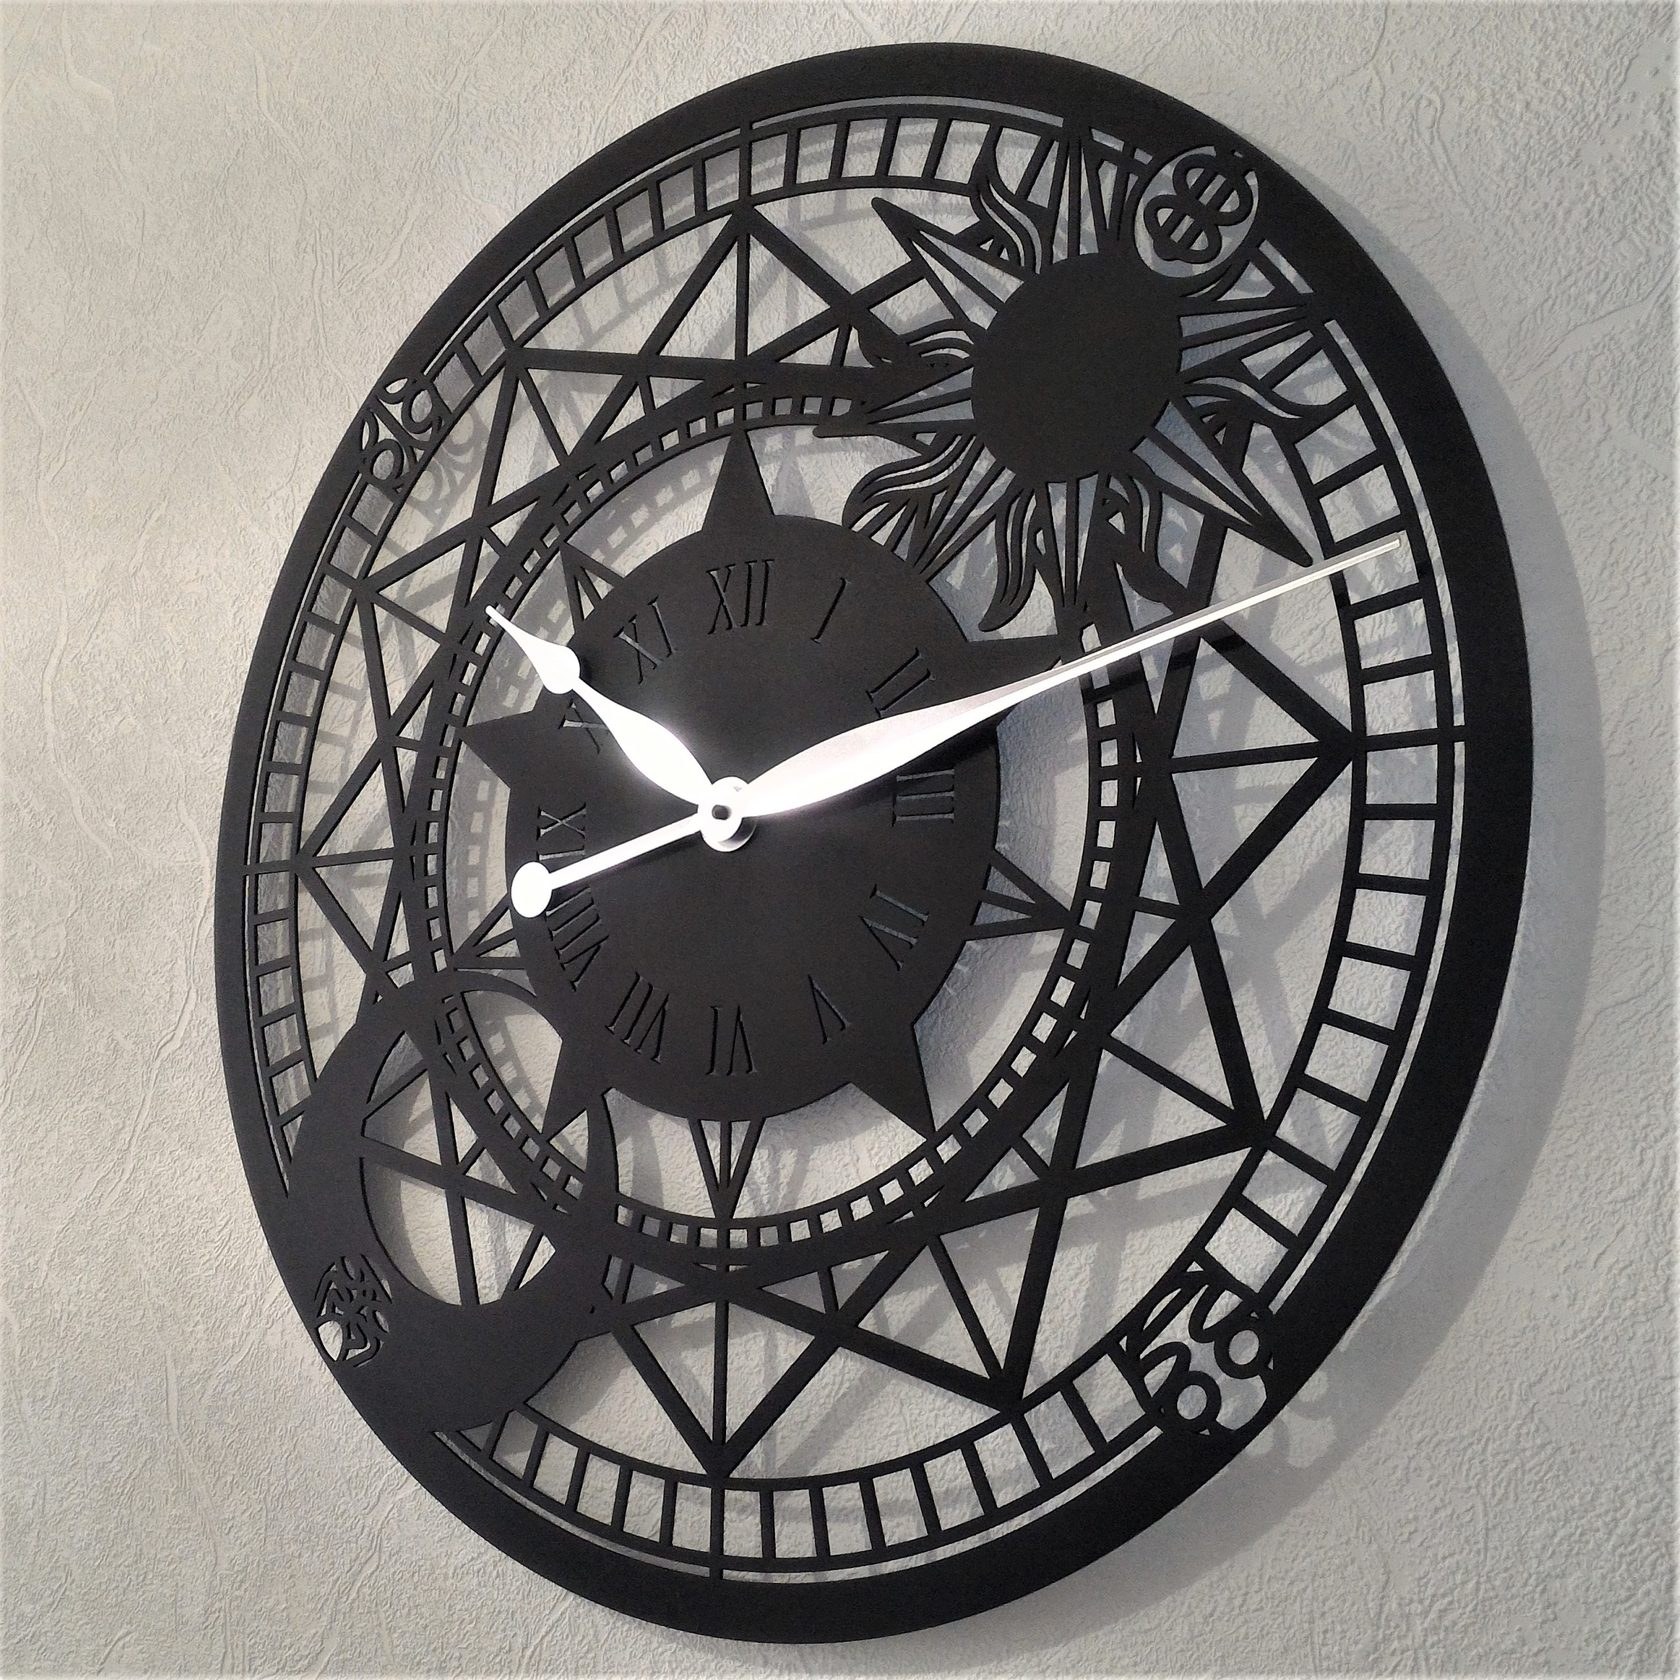 Нестандартные часы. Часы кованые настенные. Часы настенные металлические. Часы на стену из металла. Часы настенные из металла.